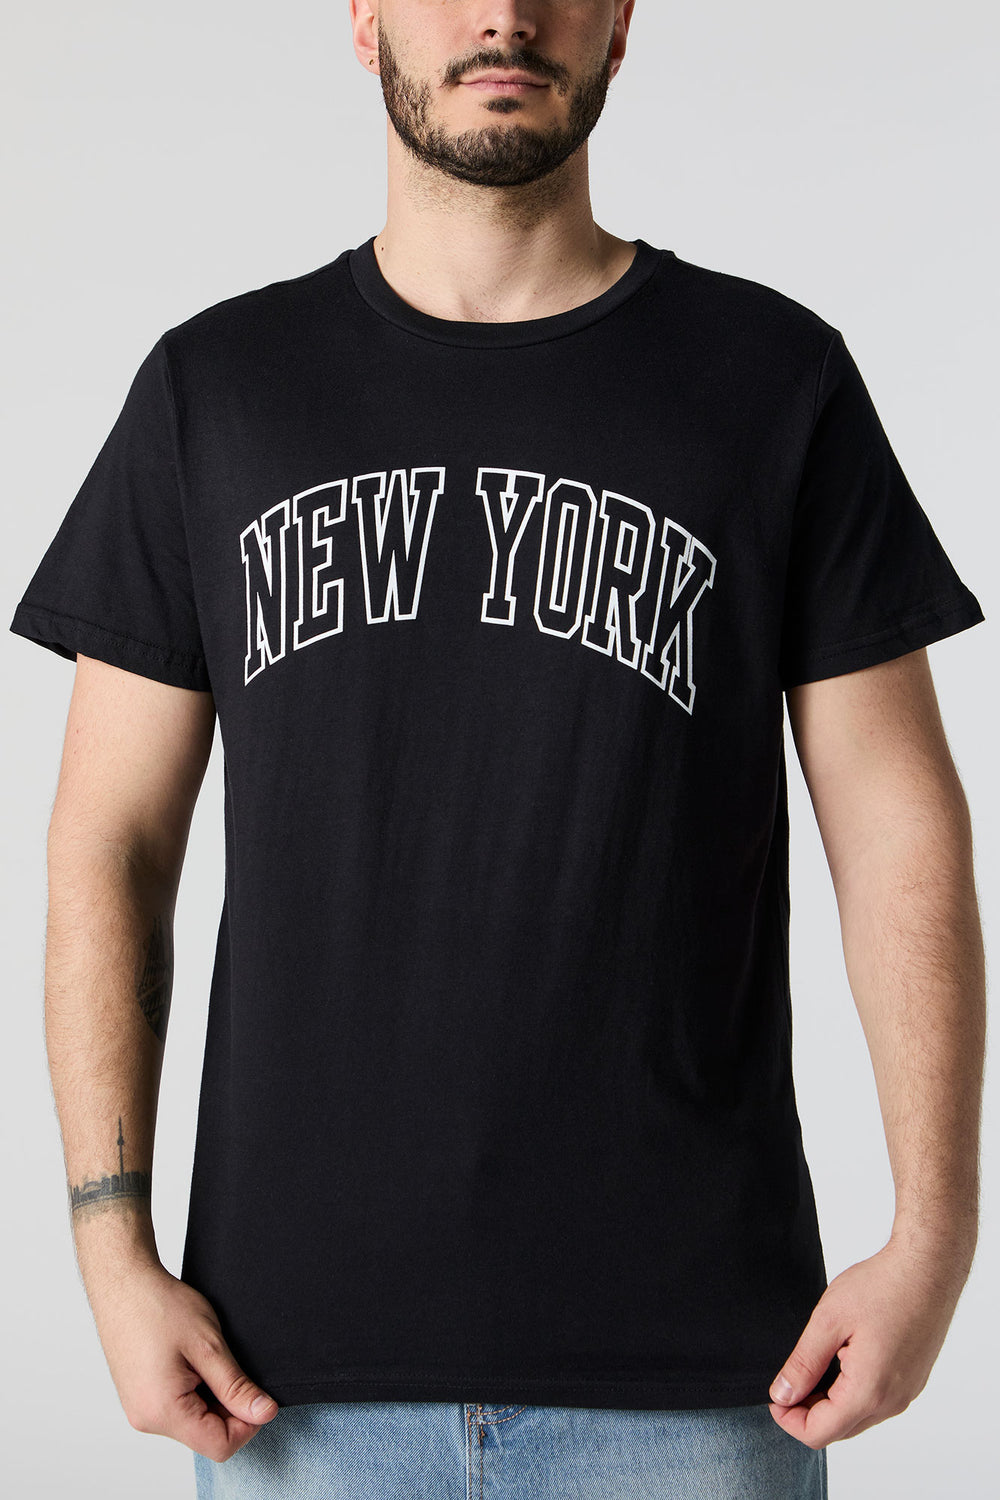 New York Graphic T-Shirt New York Graphic T-Shirt 5